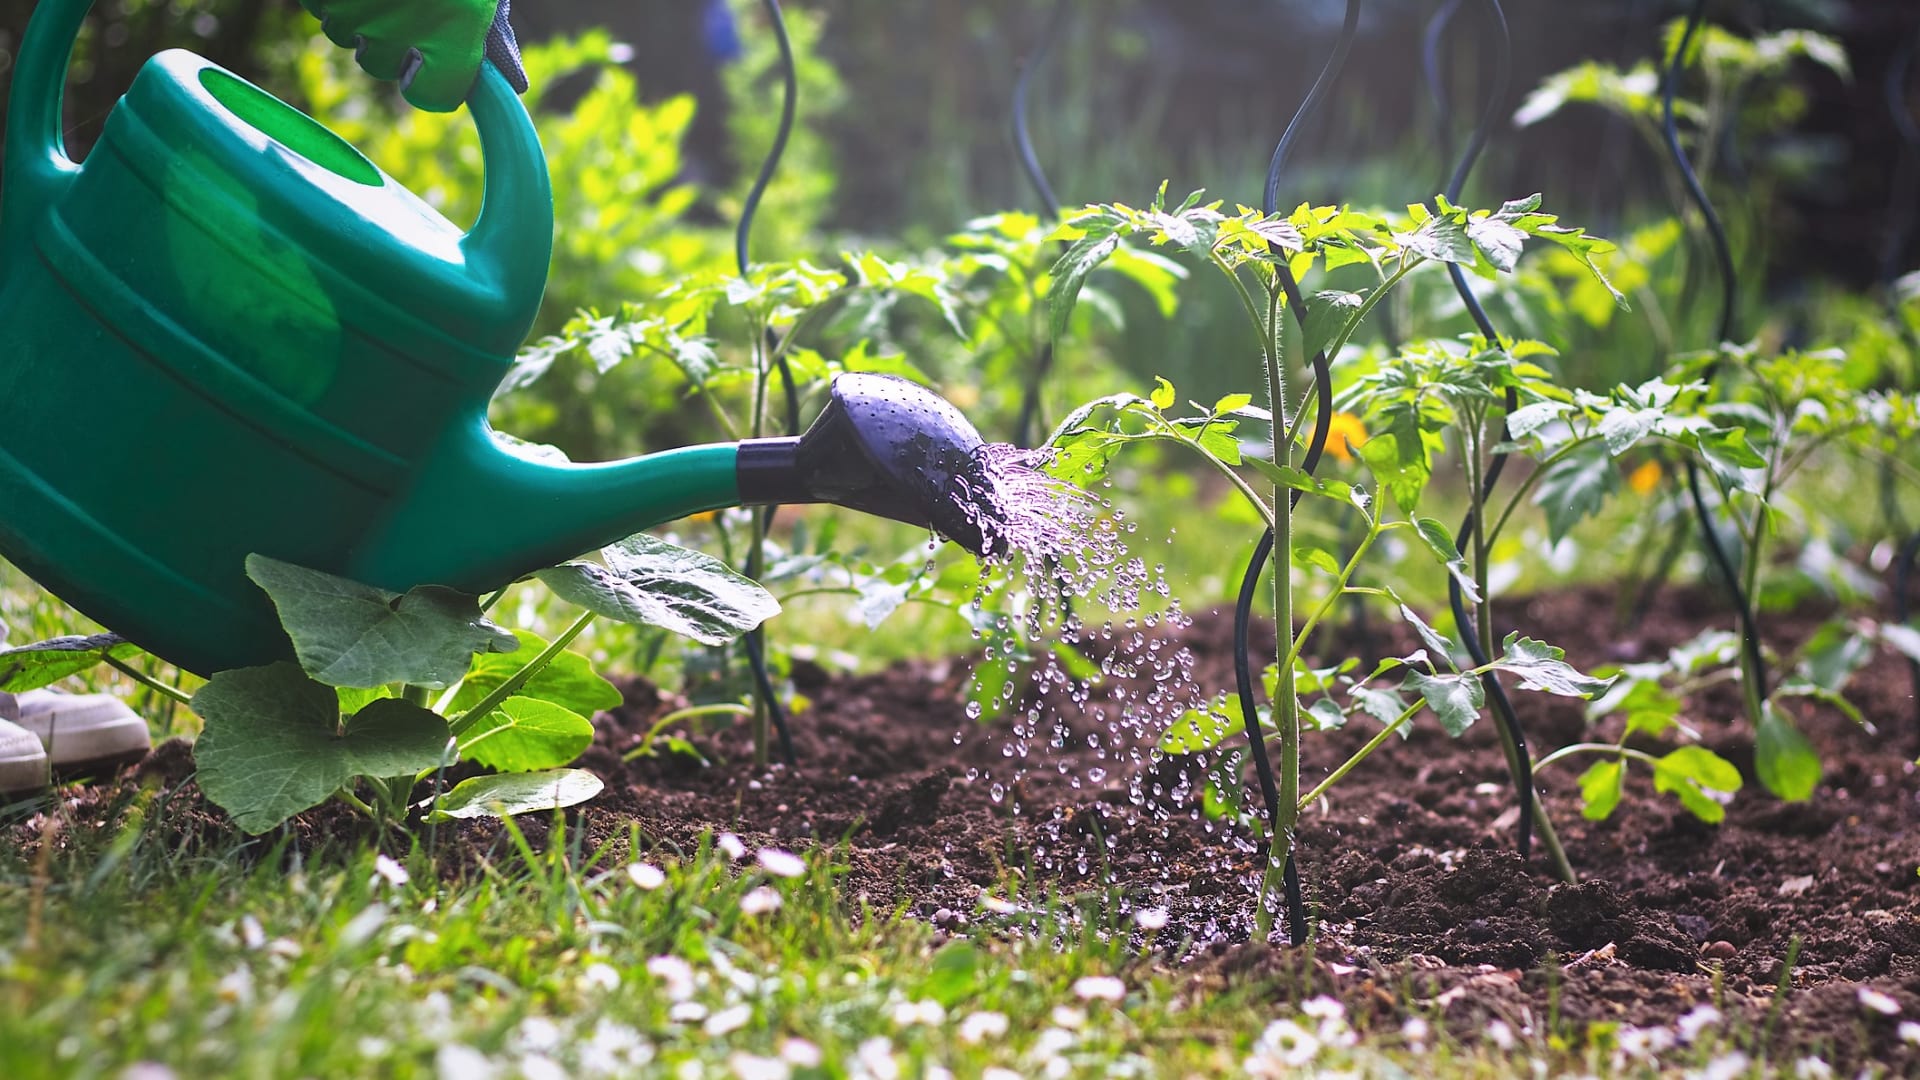 V moderní zahradě dáváme přednost domácím přírodním hnojivům a ochranným postřikům před chemickými, vyplatí se to!